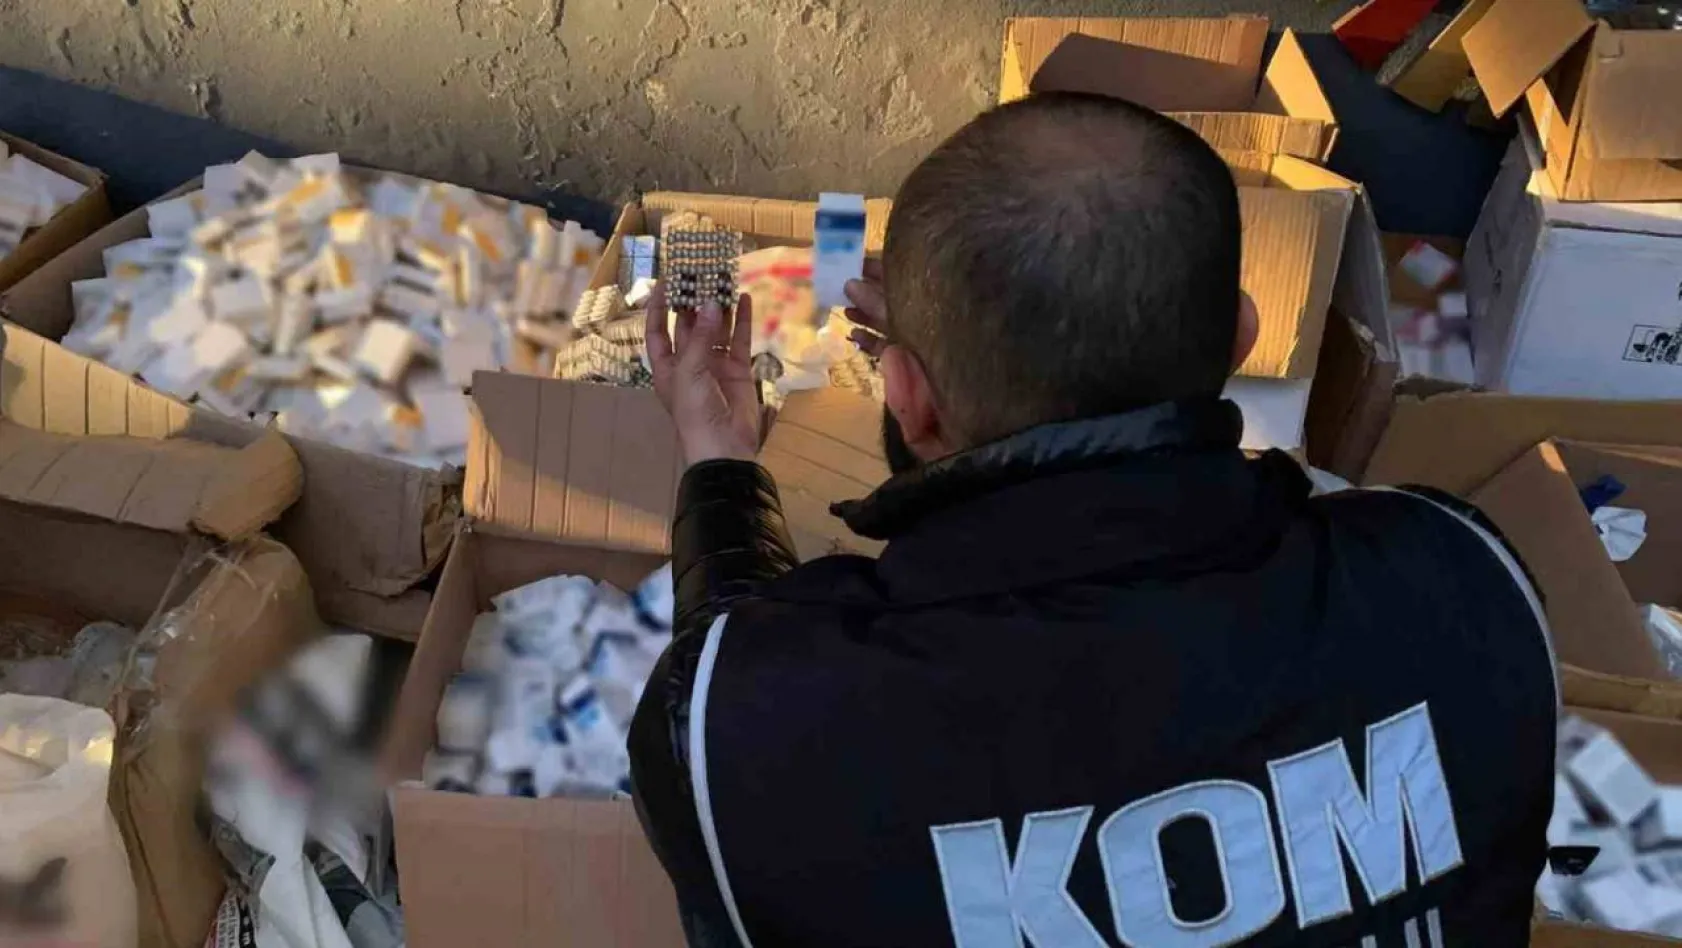 İstanbul'da sahte ilaç operasyonunda 1 kişi tutuklandı